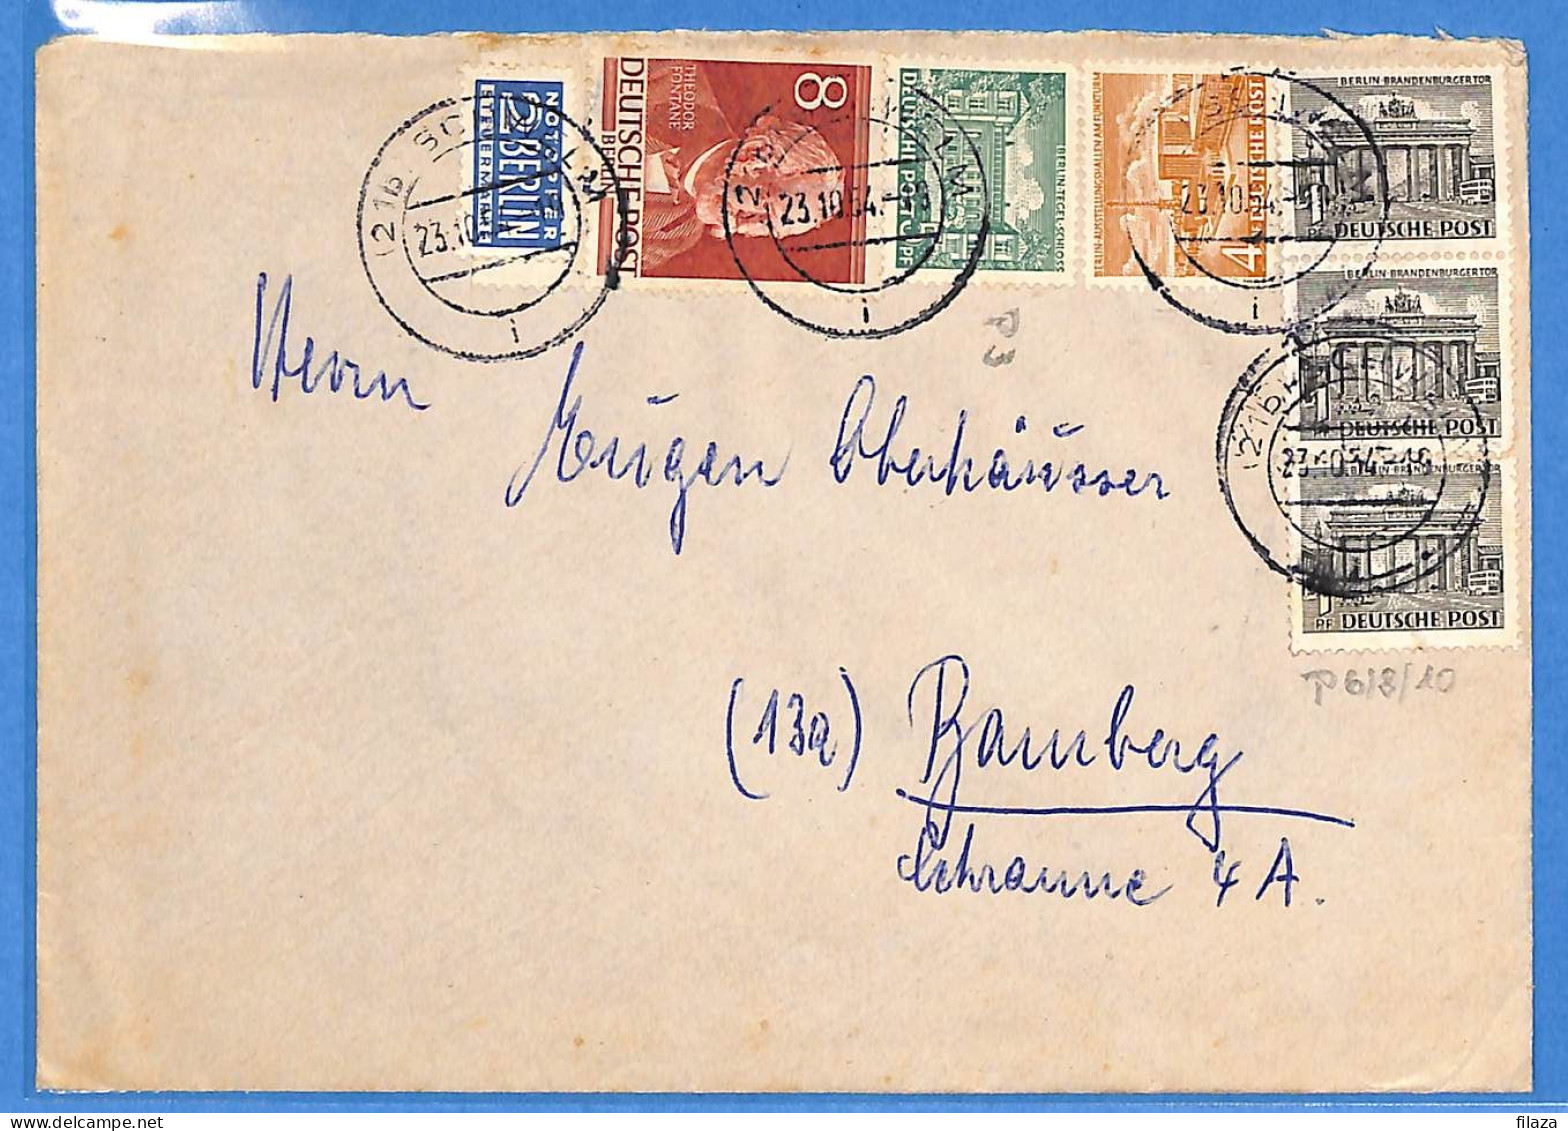 Berlin West 1954 - Lettre De Schwelm - G33065 - Lettres & Documents